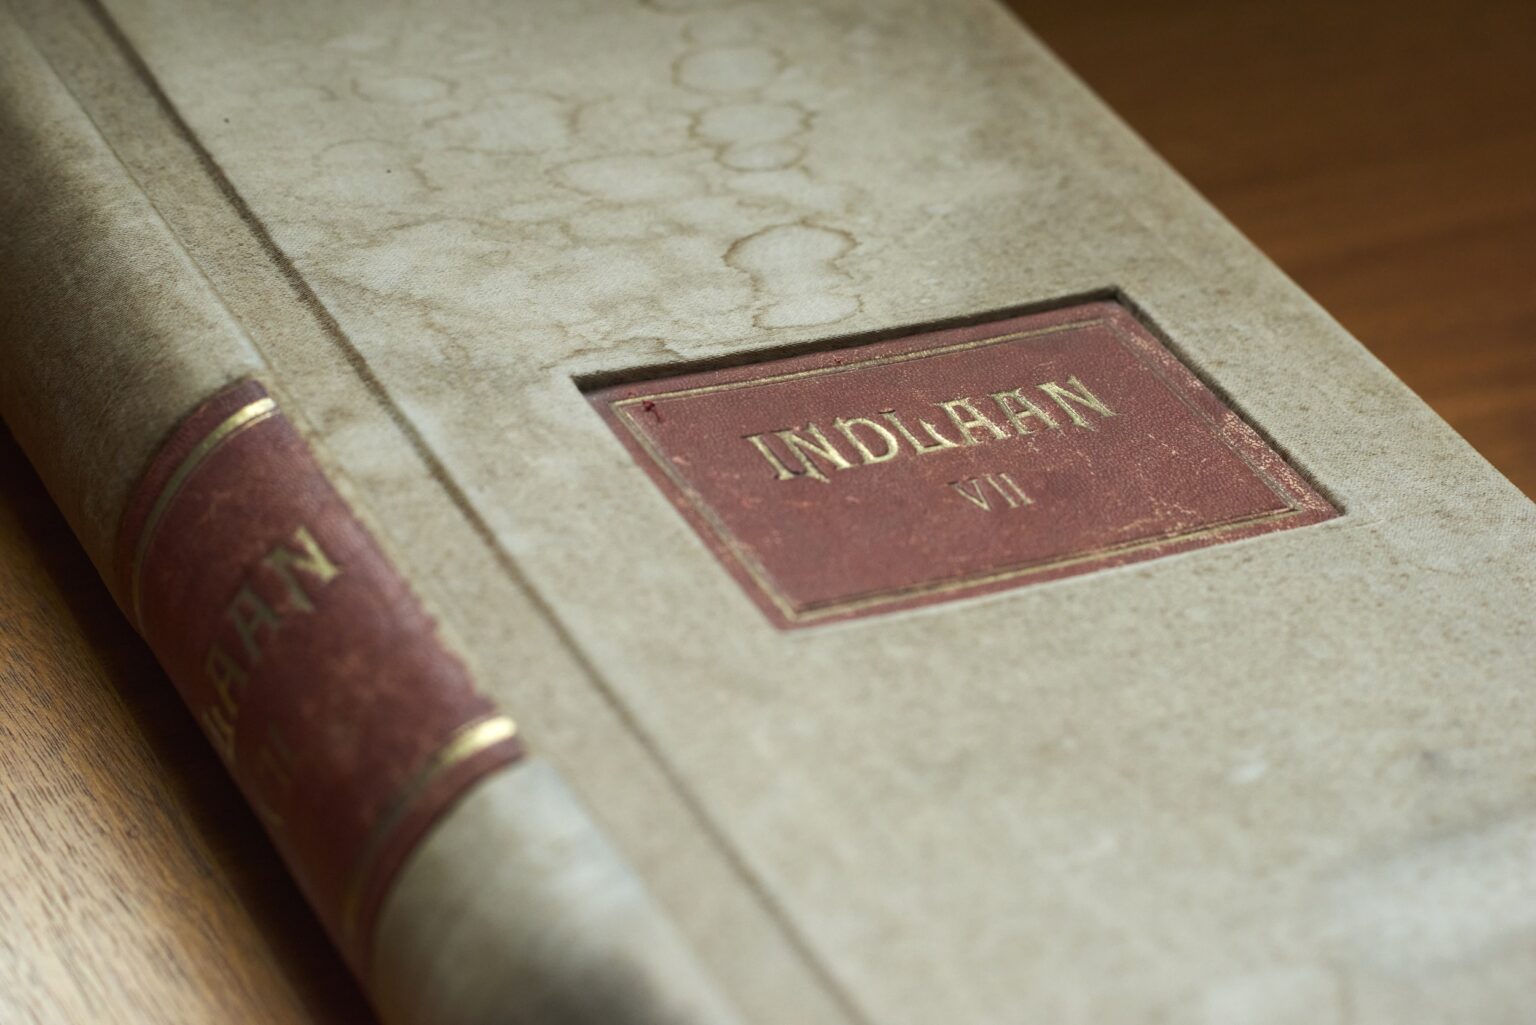 Her ses en gammeldags indlånsbog, hvor man kan se at den har patina. Bogen er både dekorativ, men fortæller også en historie omkring en historisk interesse for finans.